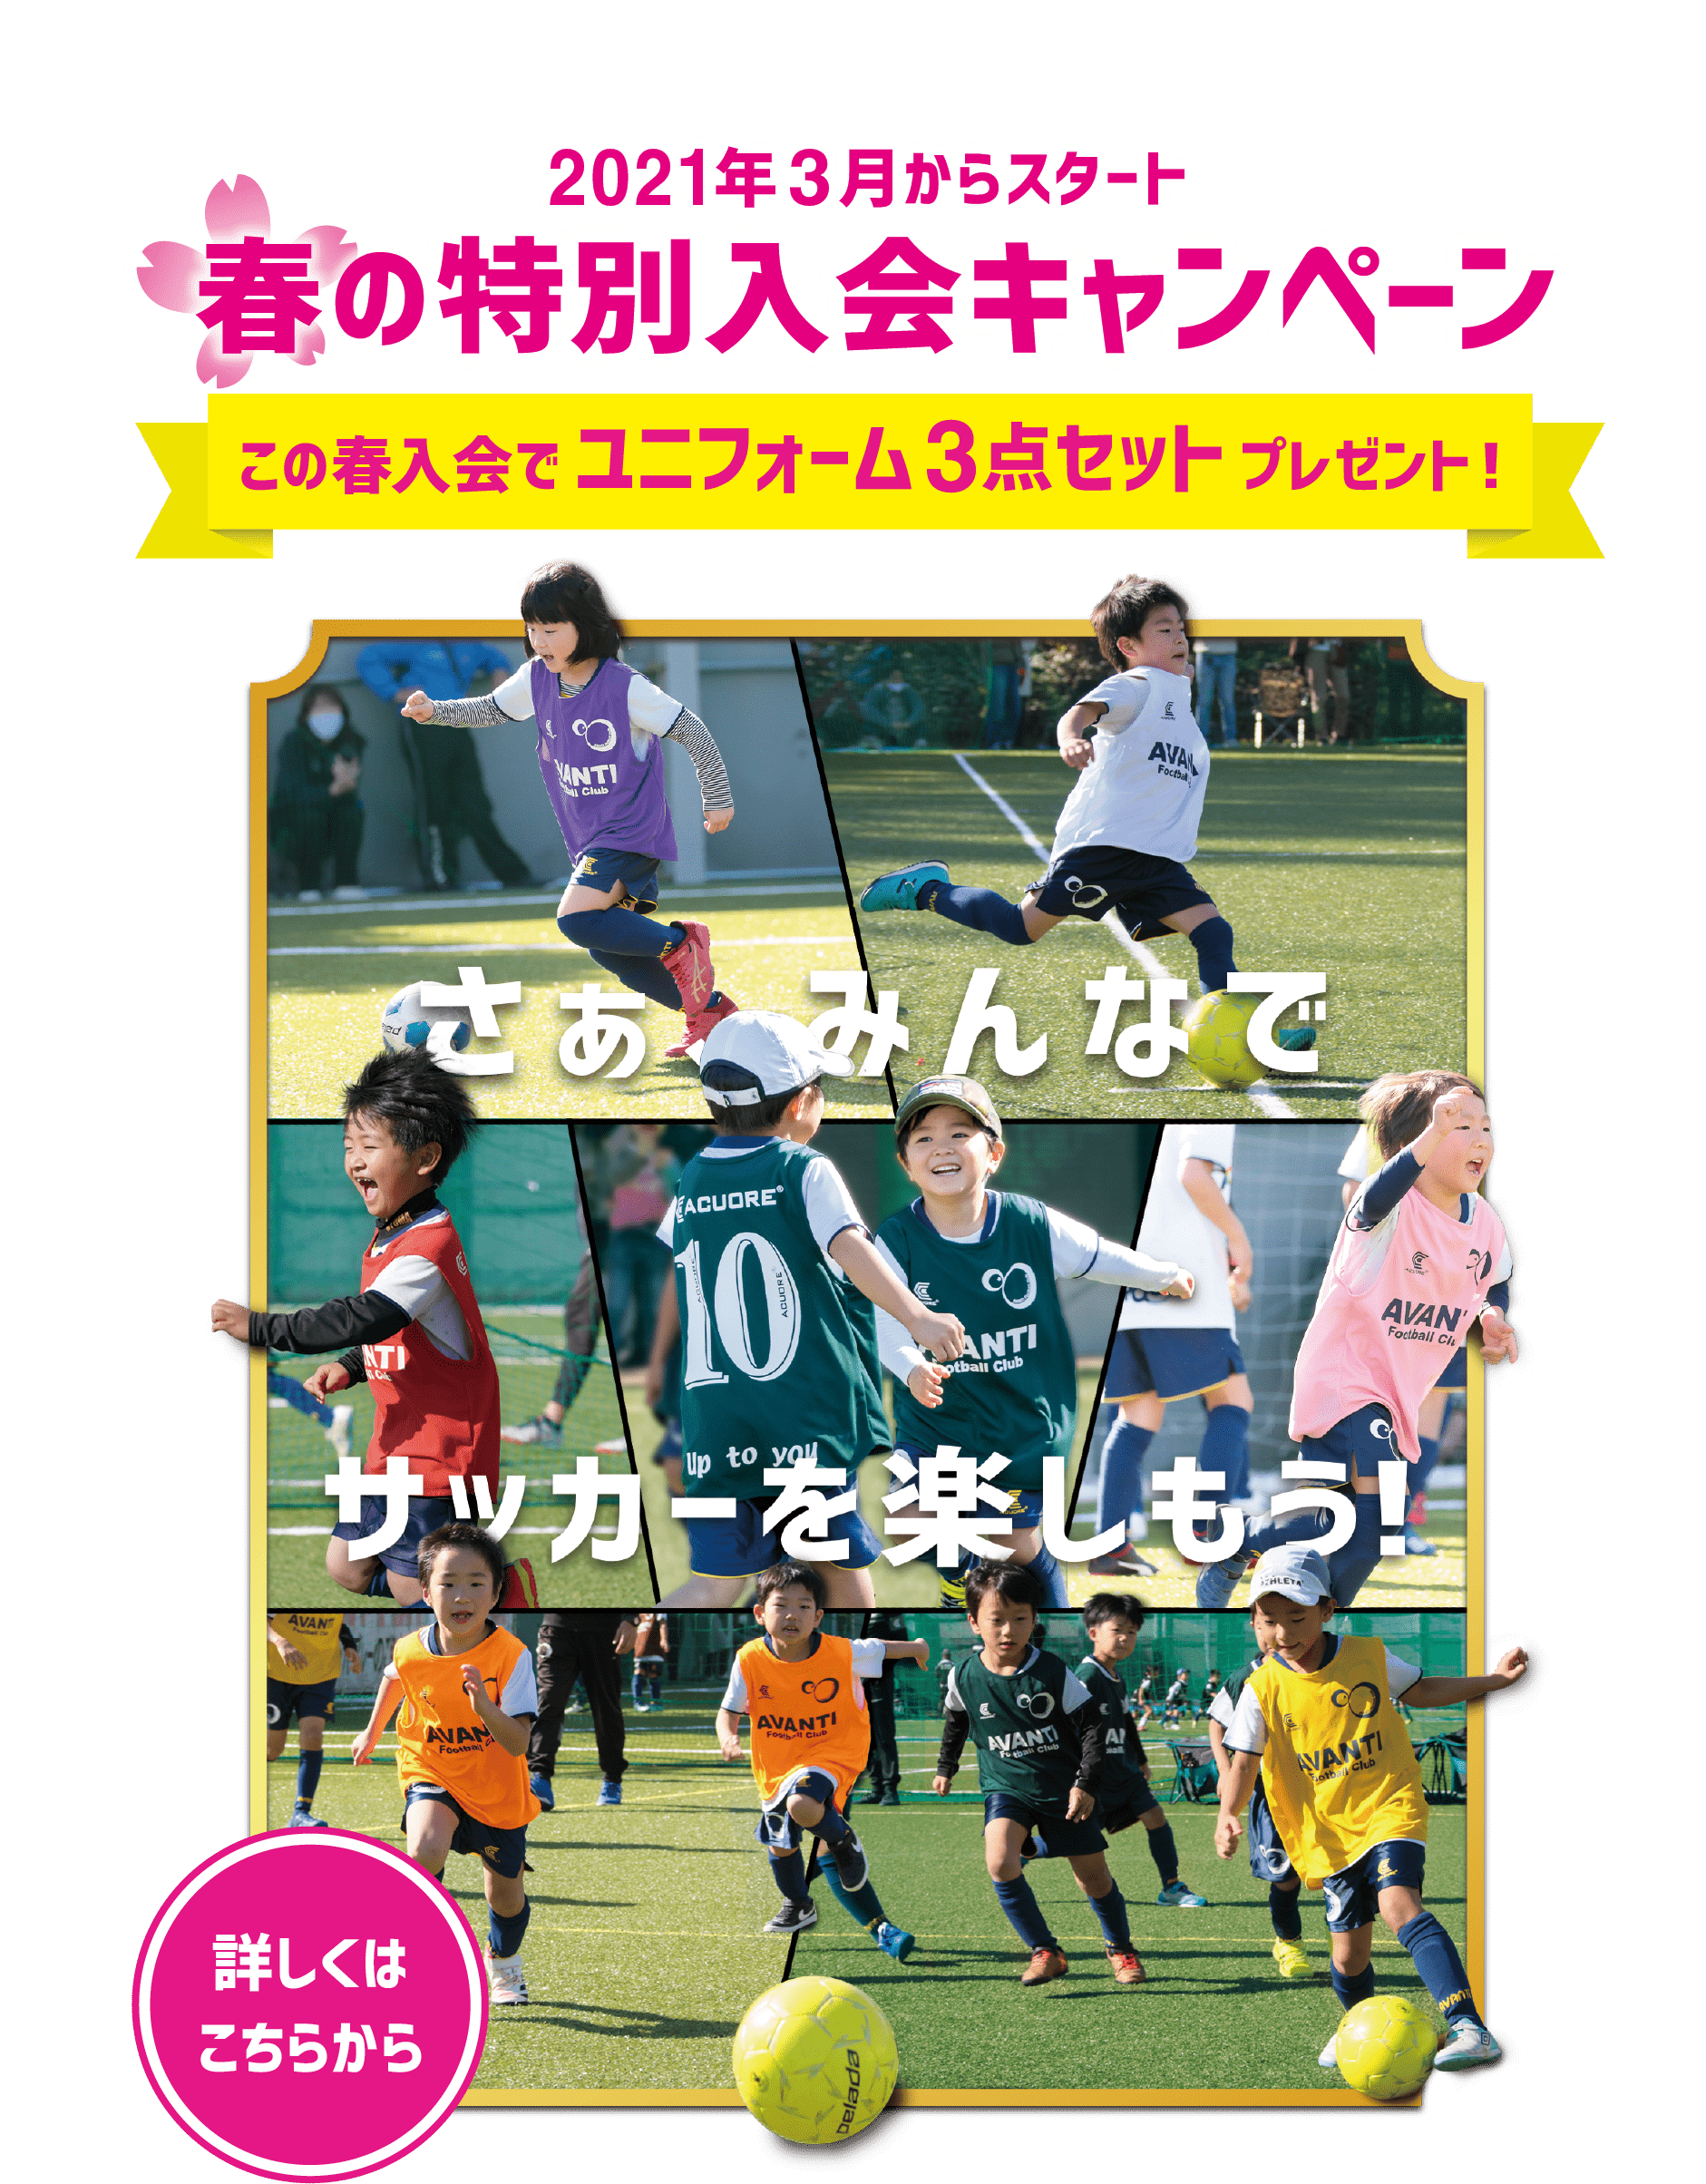 大阪のサッカースクール サッカーチーム Avanti Football Club アバンティ フットボールクラブ